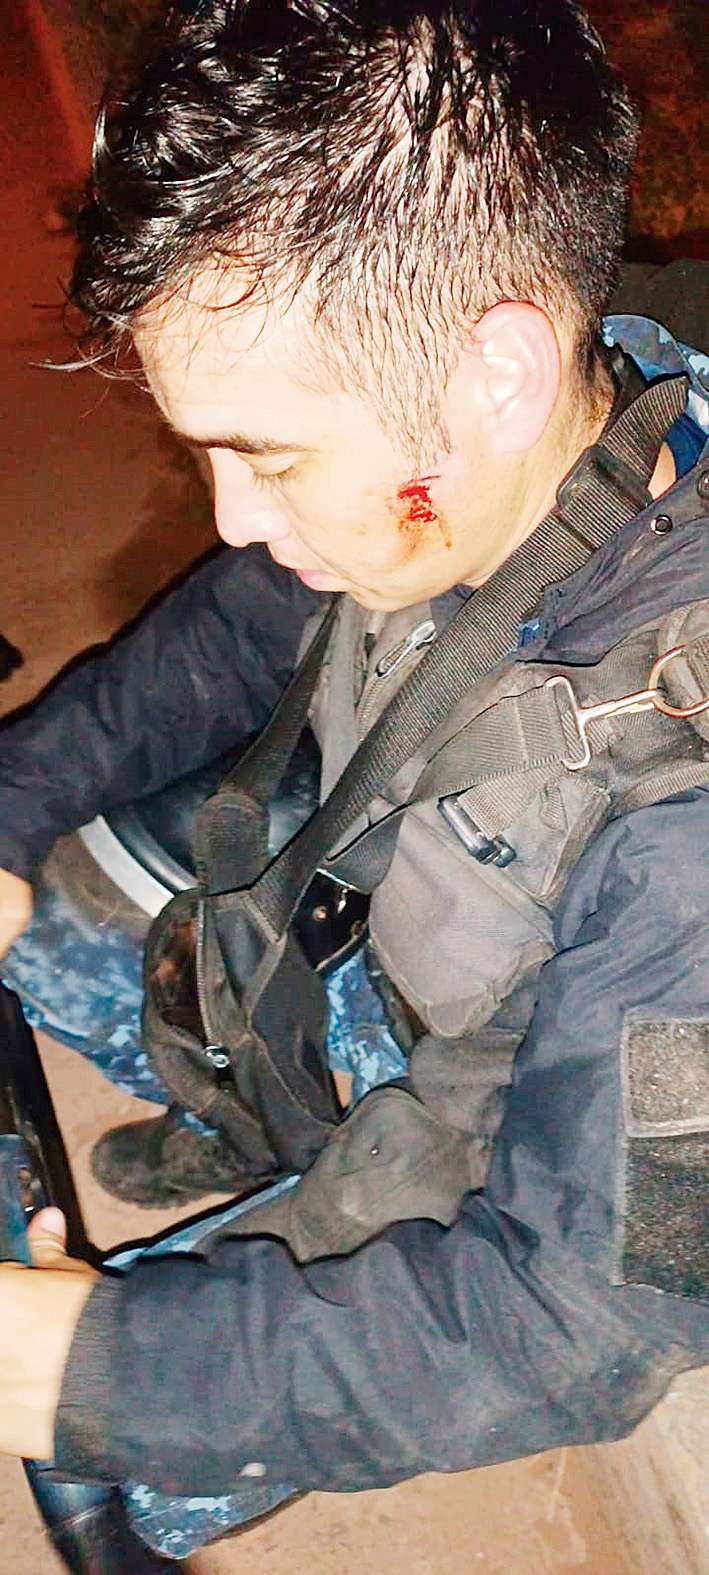 Tras un desorden generalizado, originarios
causaron lesiones a cinco efectivos policiales